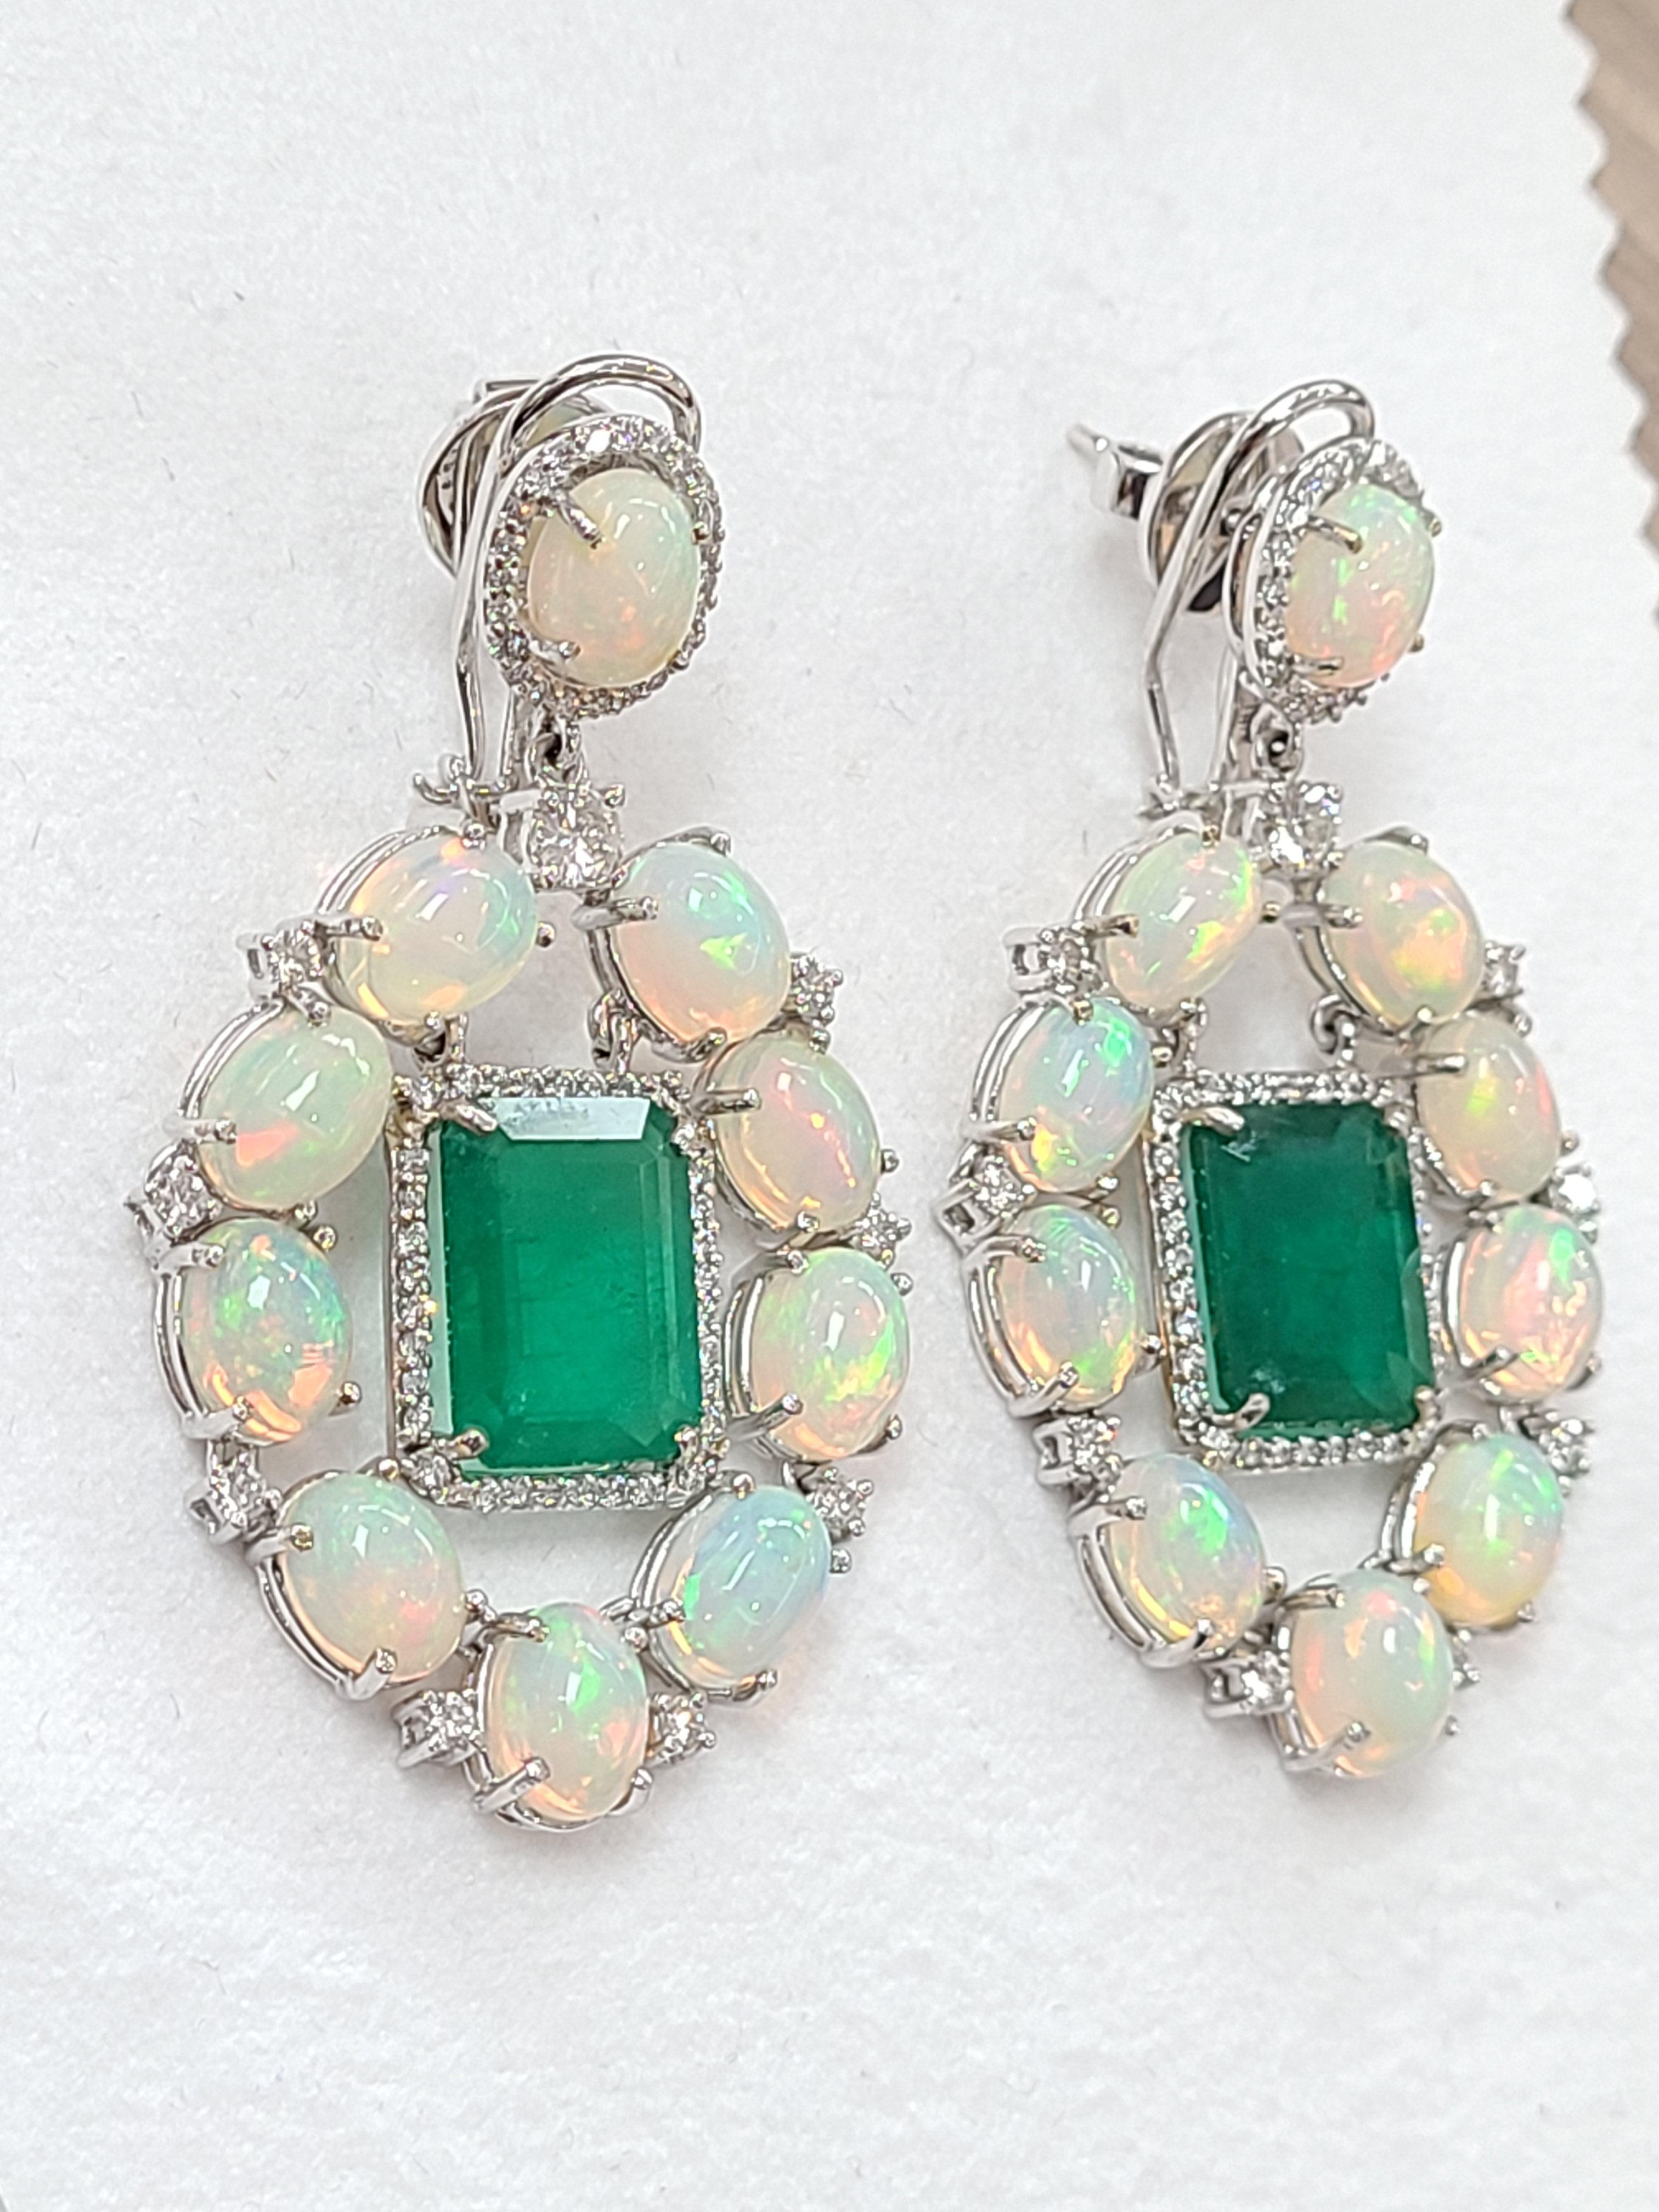 opal and emerald earrings